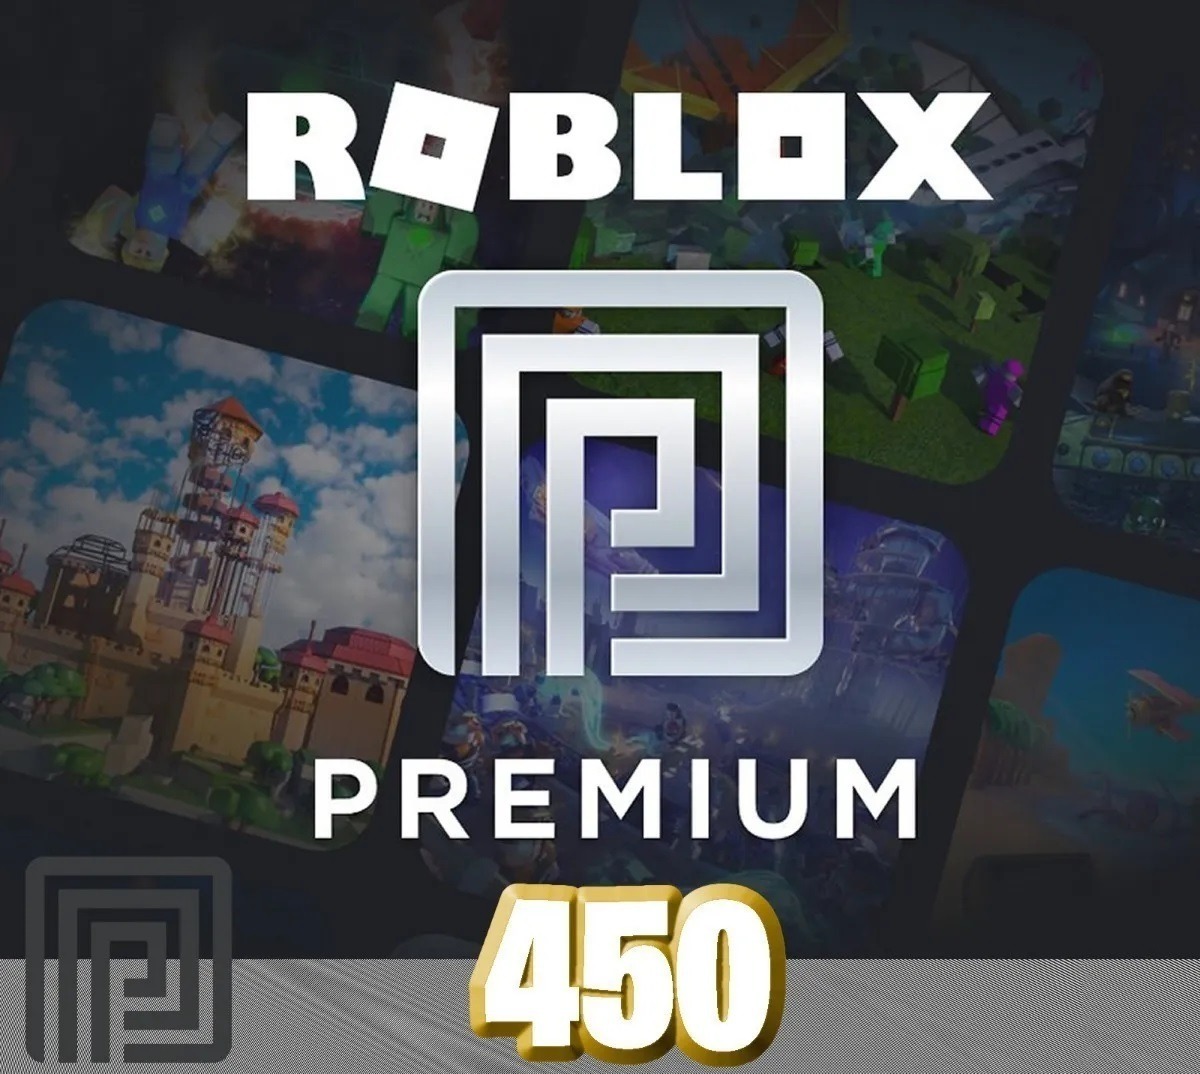 Roblox Premium 450 Entrega Inmediata S 20 50 En Mercado Libre - 1200 robux roblox entrega inmediata mercadolider gold 1 469